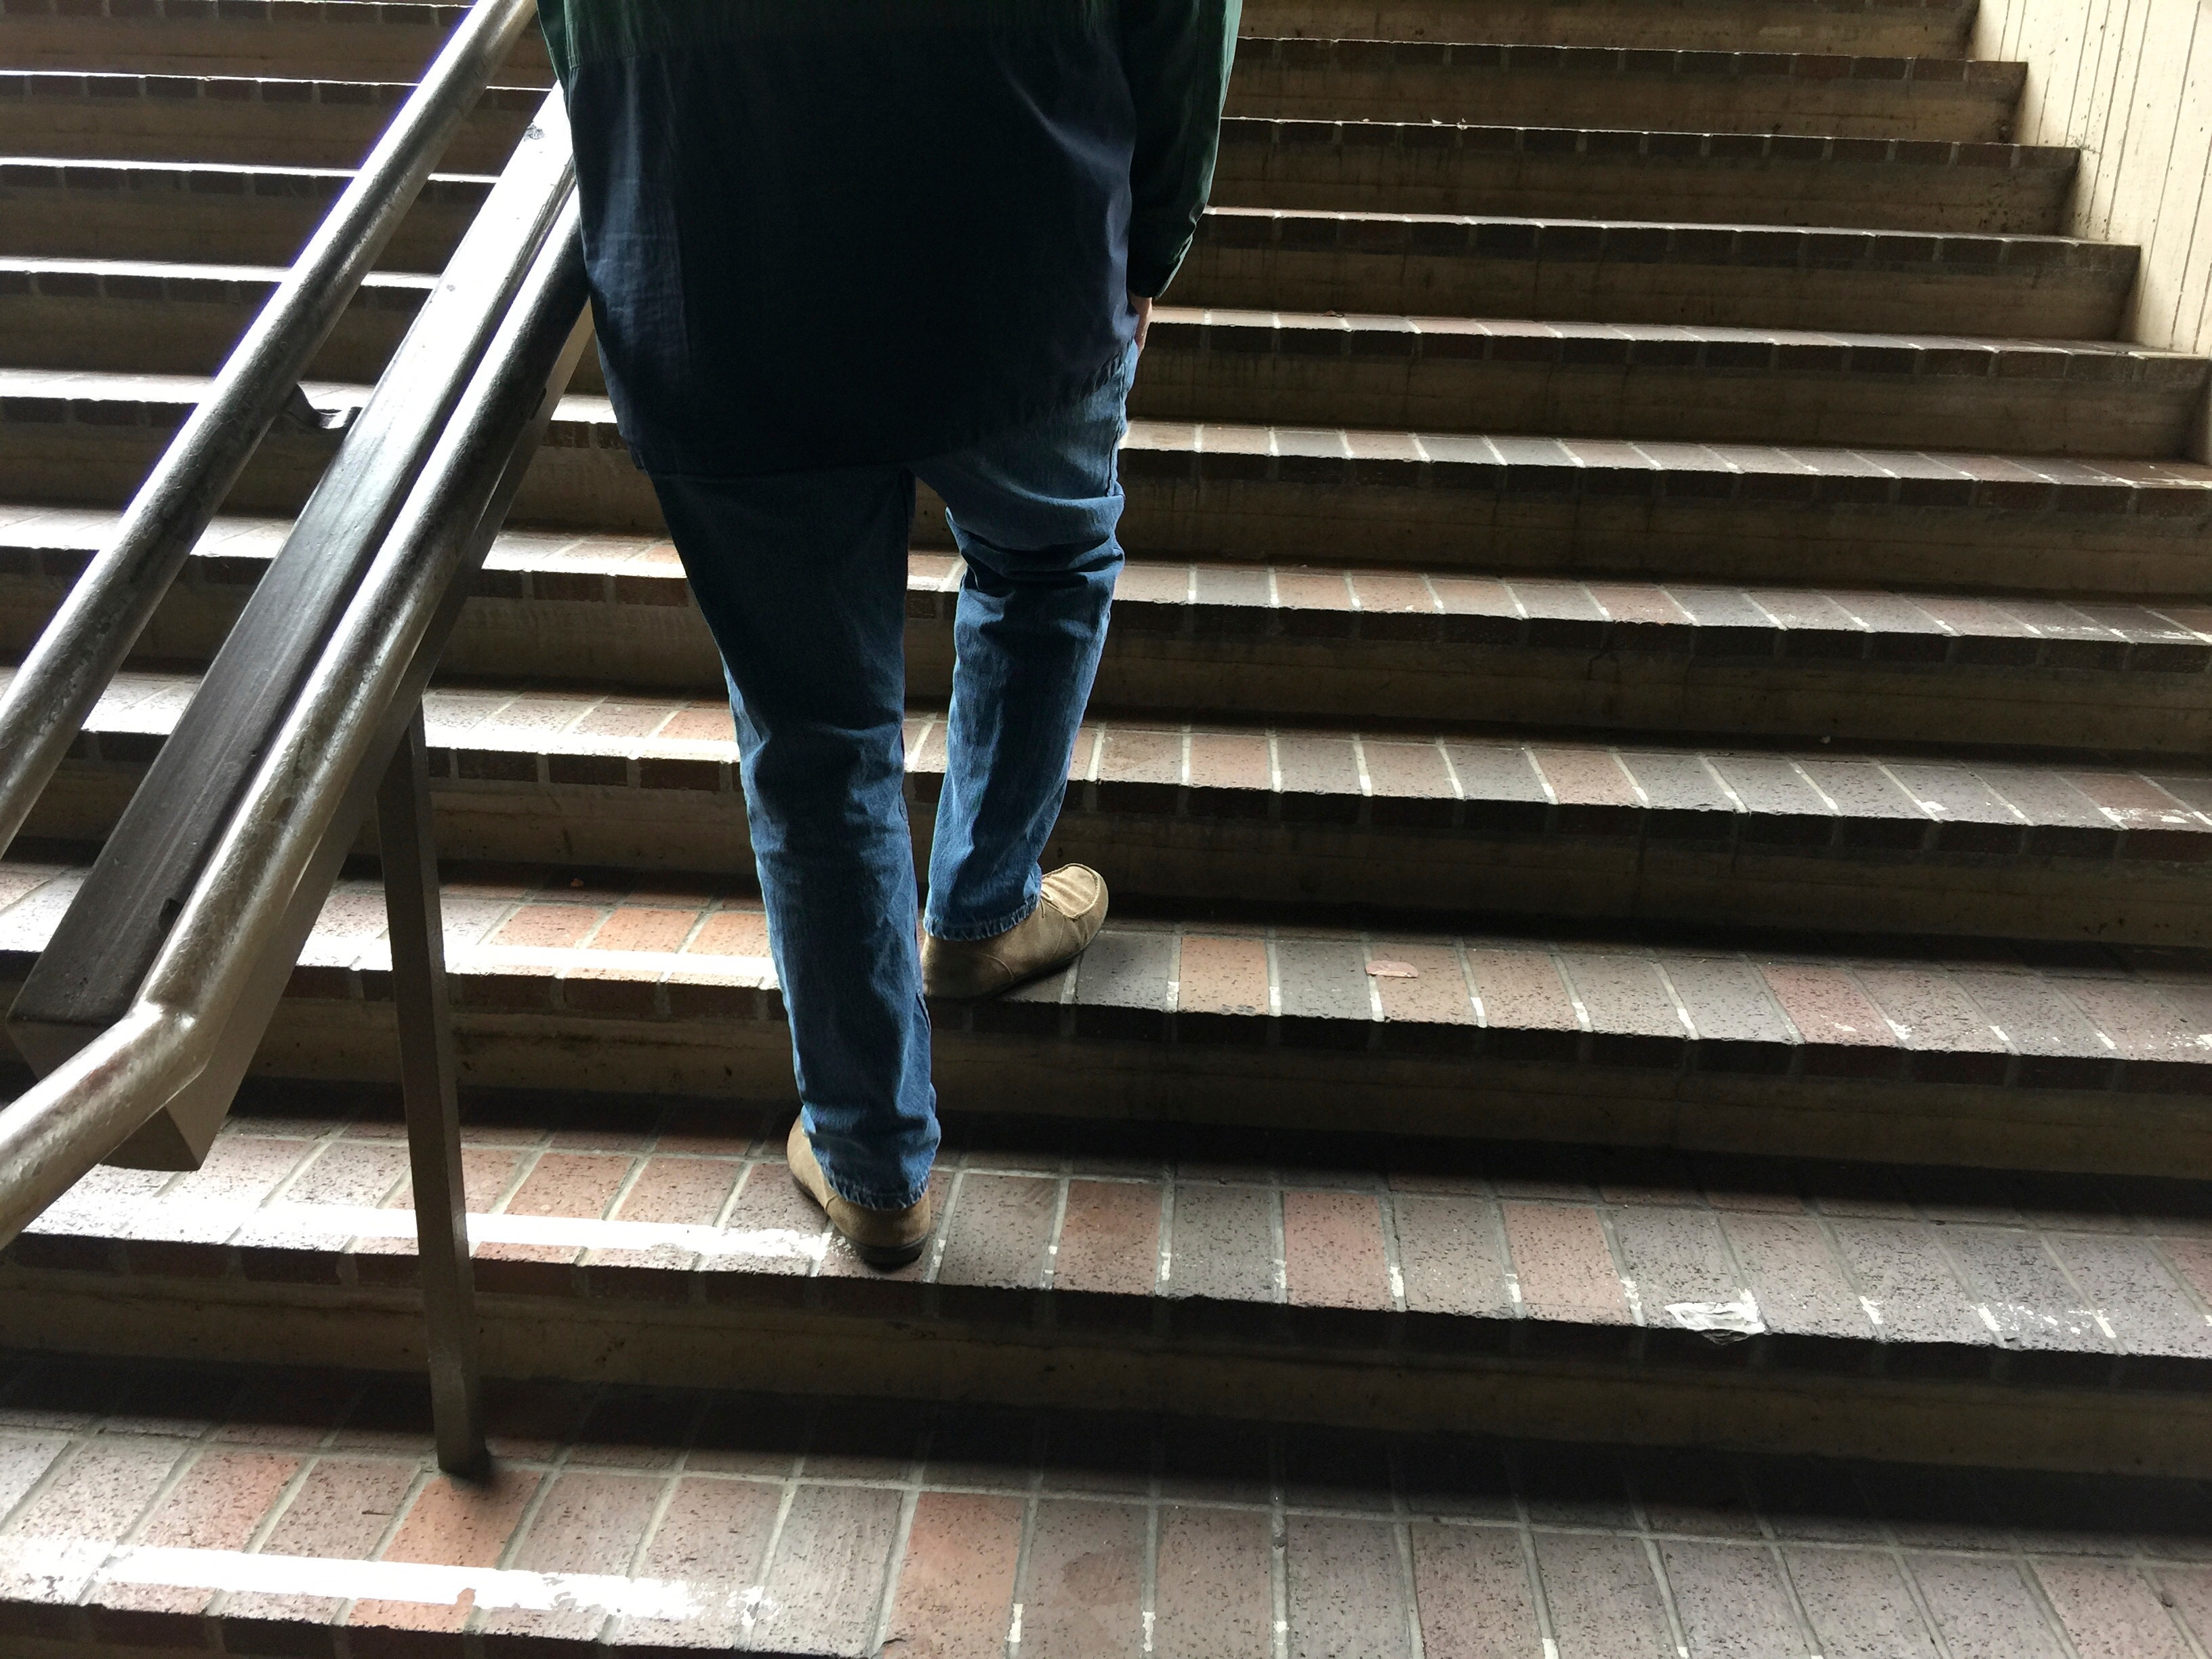 Подниматься спускаться по лестнице. Человек на ступеньках. Человек на лестнице. Парень спускается по лестнице. Ноги идут по ступенькам.